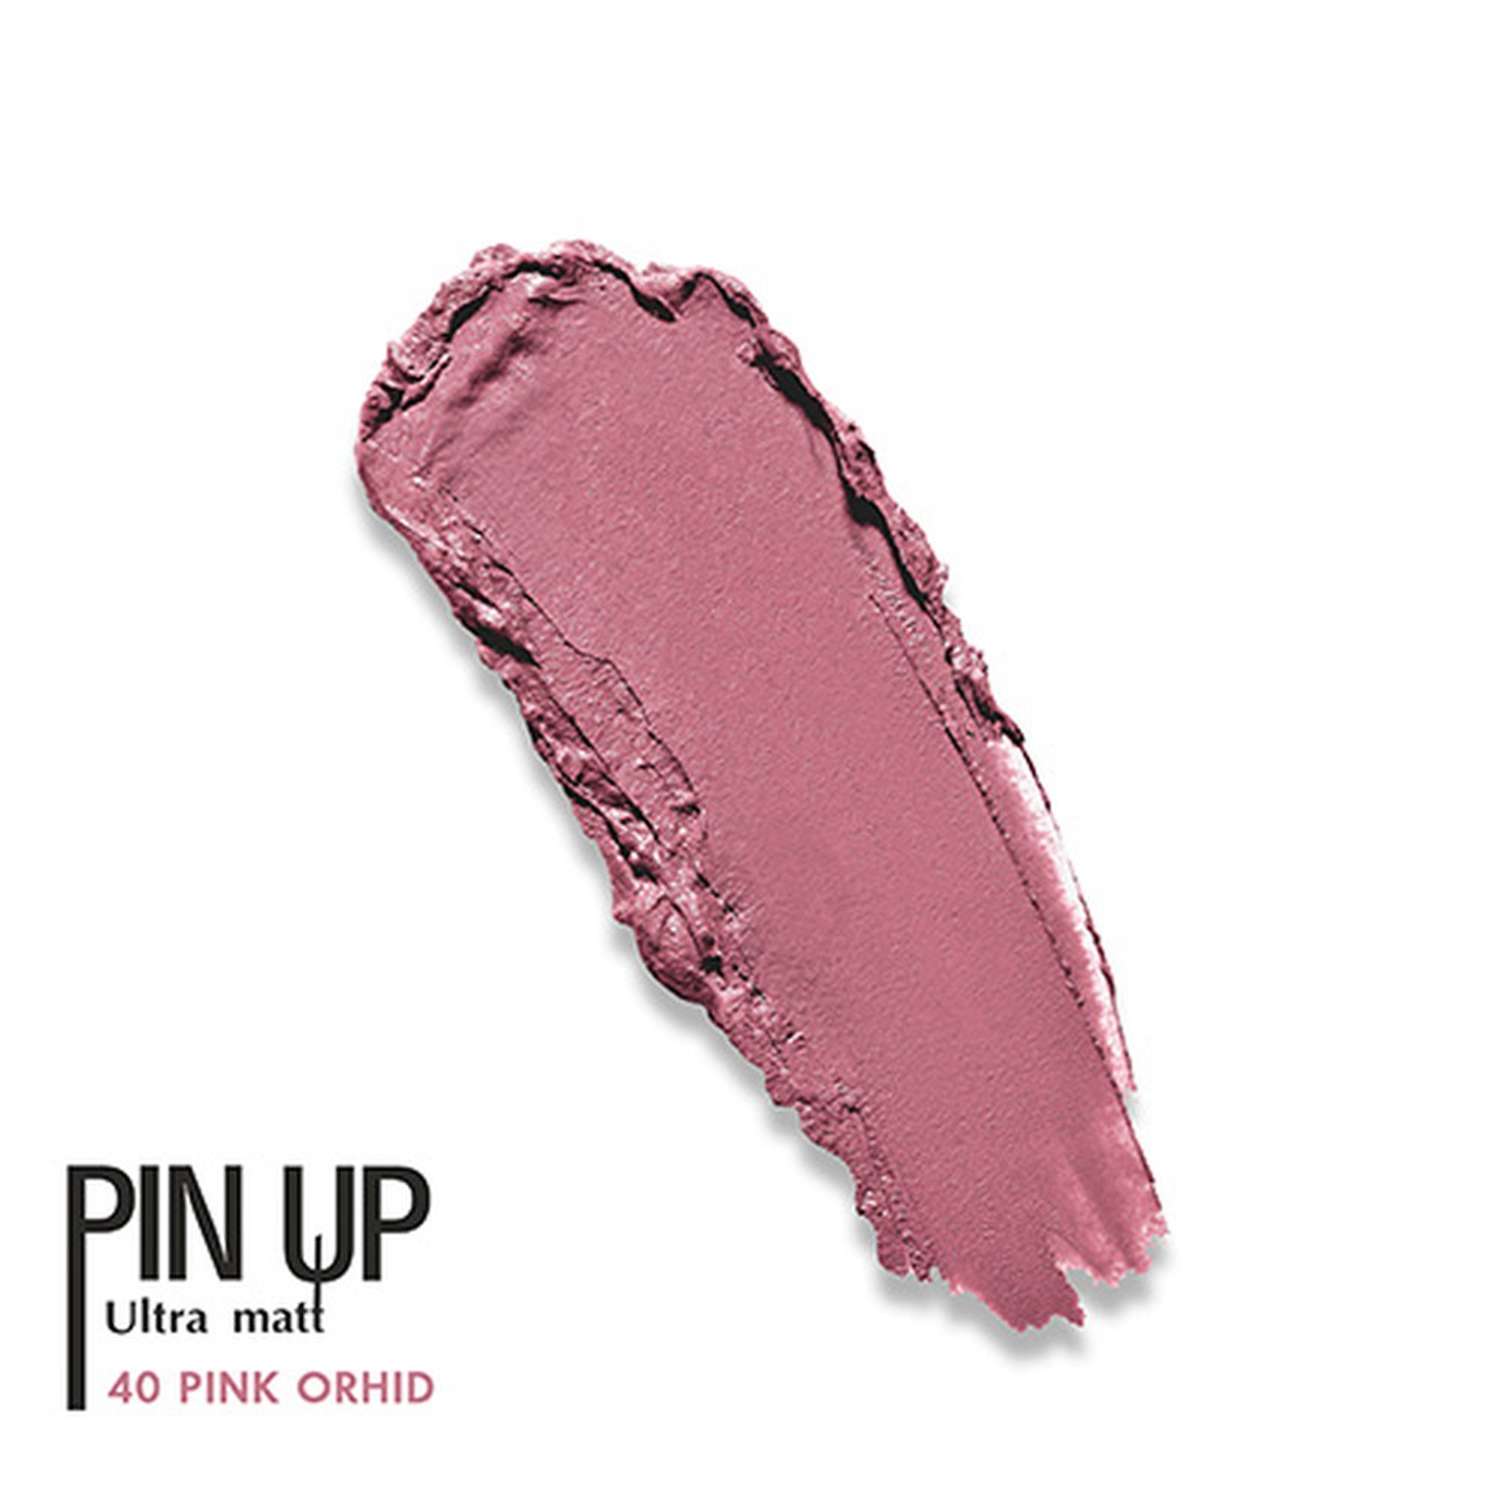 Блеск для губ Luxvisage Pin up ultra matt матовый тон 40 pink orhid - фото 5